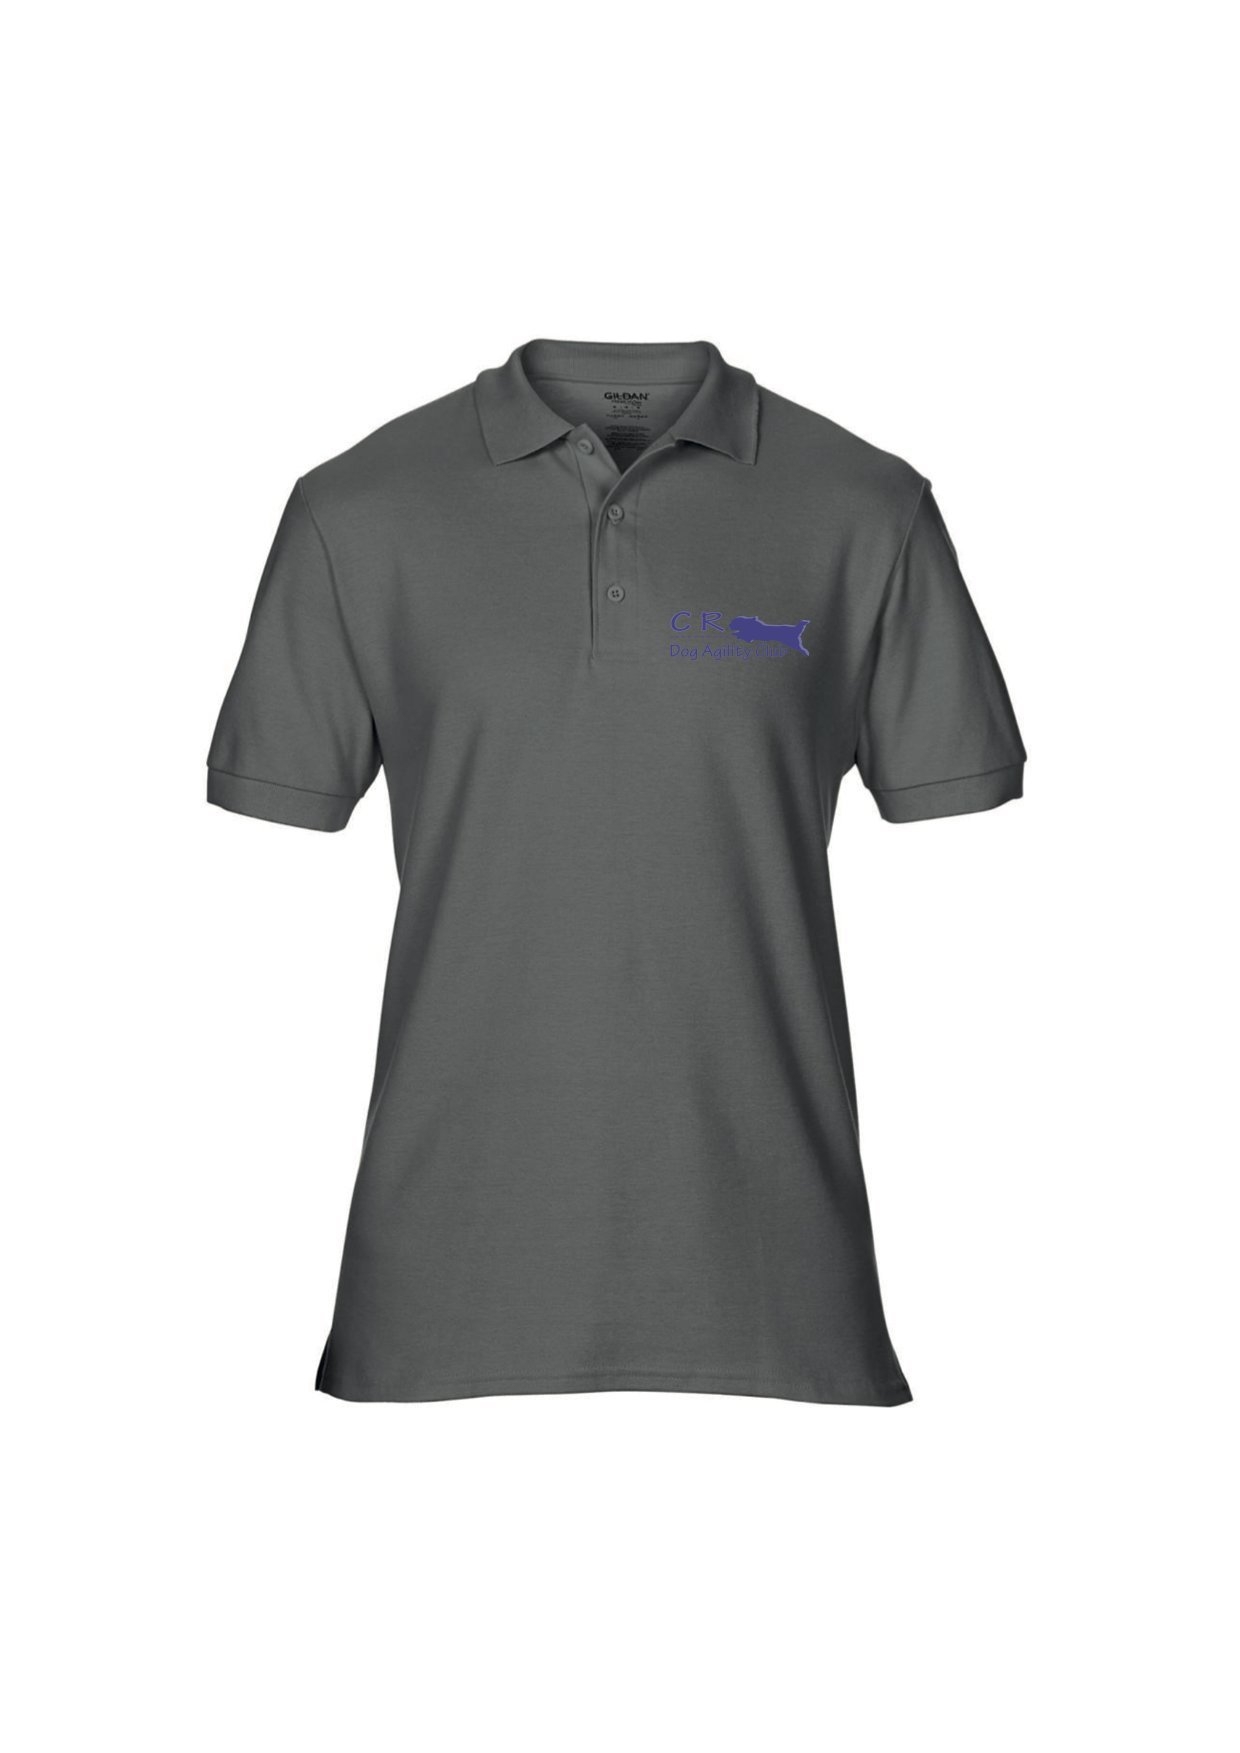 CR Agility Sport polo shirt Small – Pooch